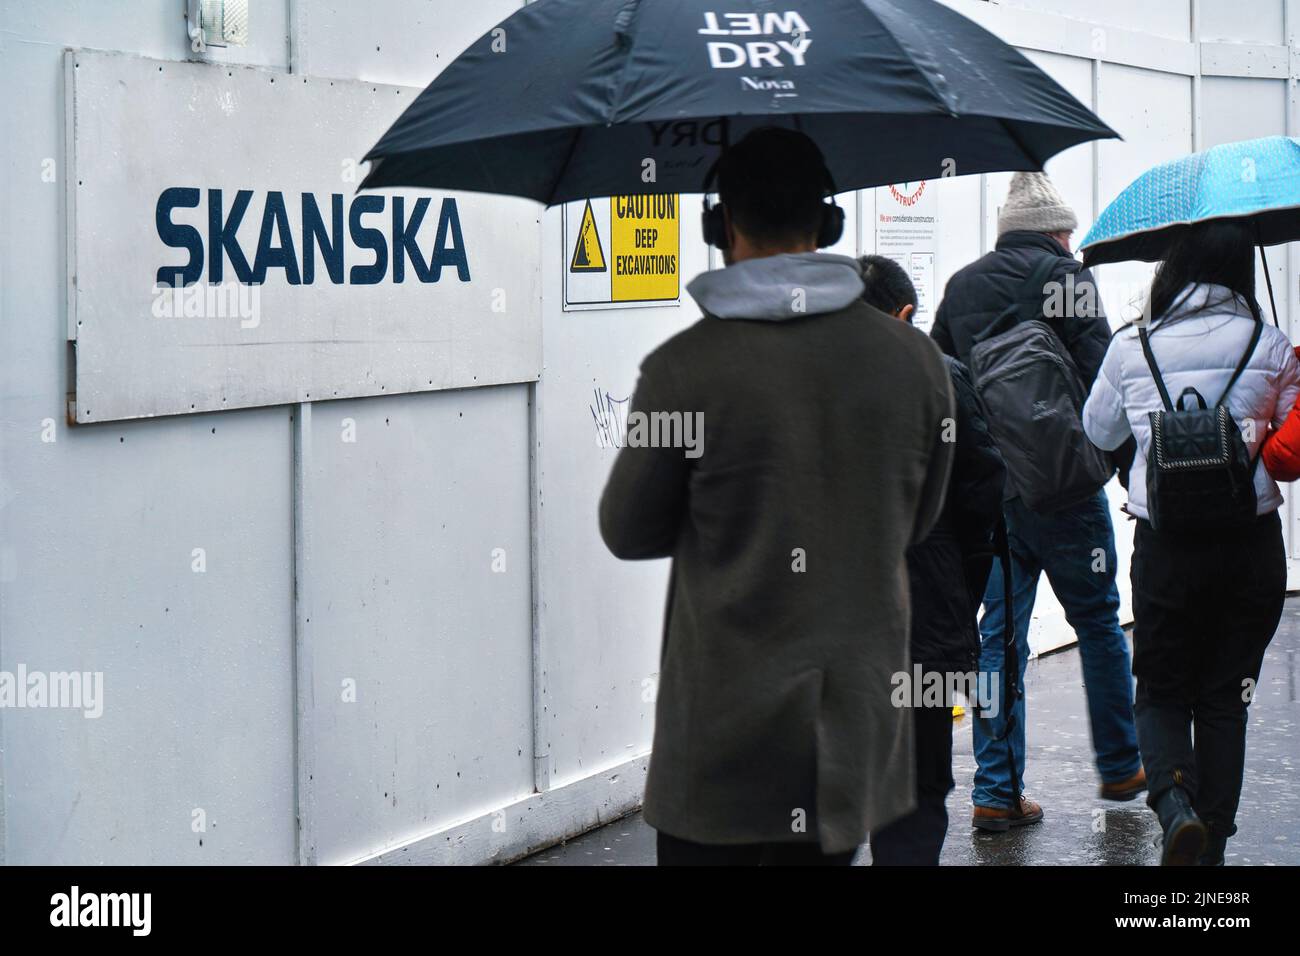 Londres, Royaume-Uni - 01 février 2019: Piétons avec parapluies marchant près de la barrière en bois sur le site de construction avec label Skanska. Il est Swed Banque D'Images